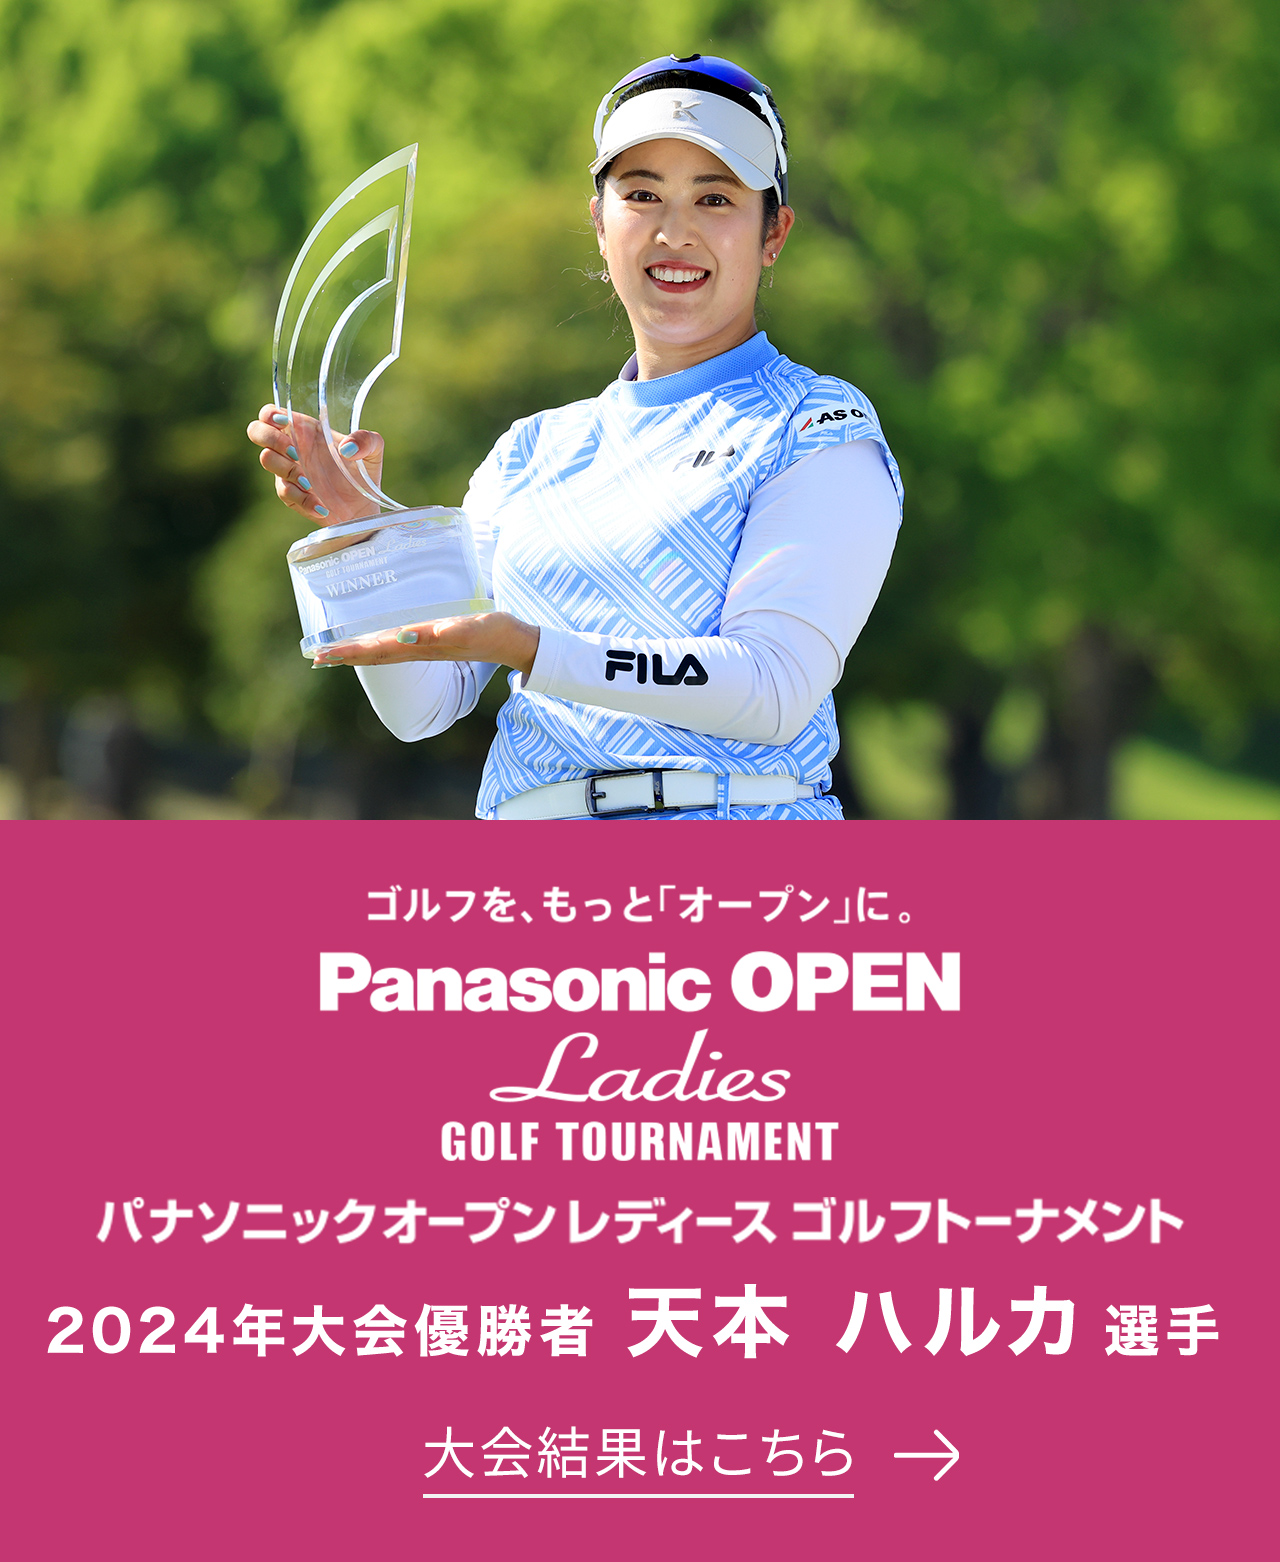 ゴルフを、もっと「オープン」に。 Panasonic OPEN Ladies GOLF TOURNAMENT パナソニックオープンレディース ゴルフトーナメント 2024年大会優勝者 天本 ハルカ選手 大会結果はこちら